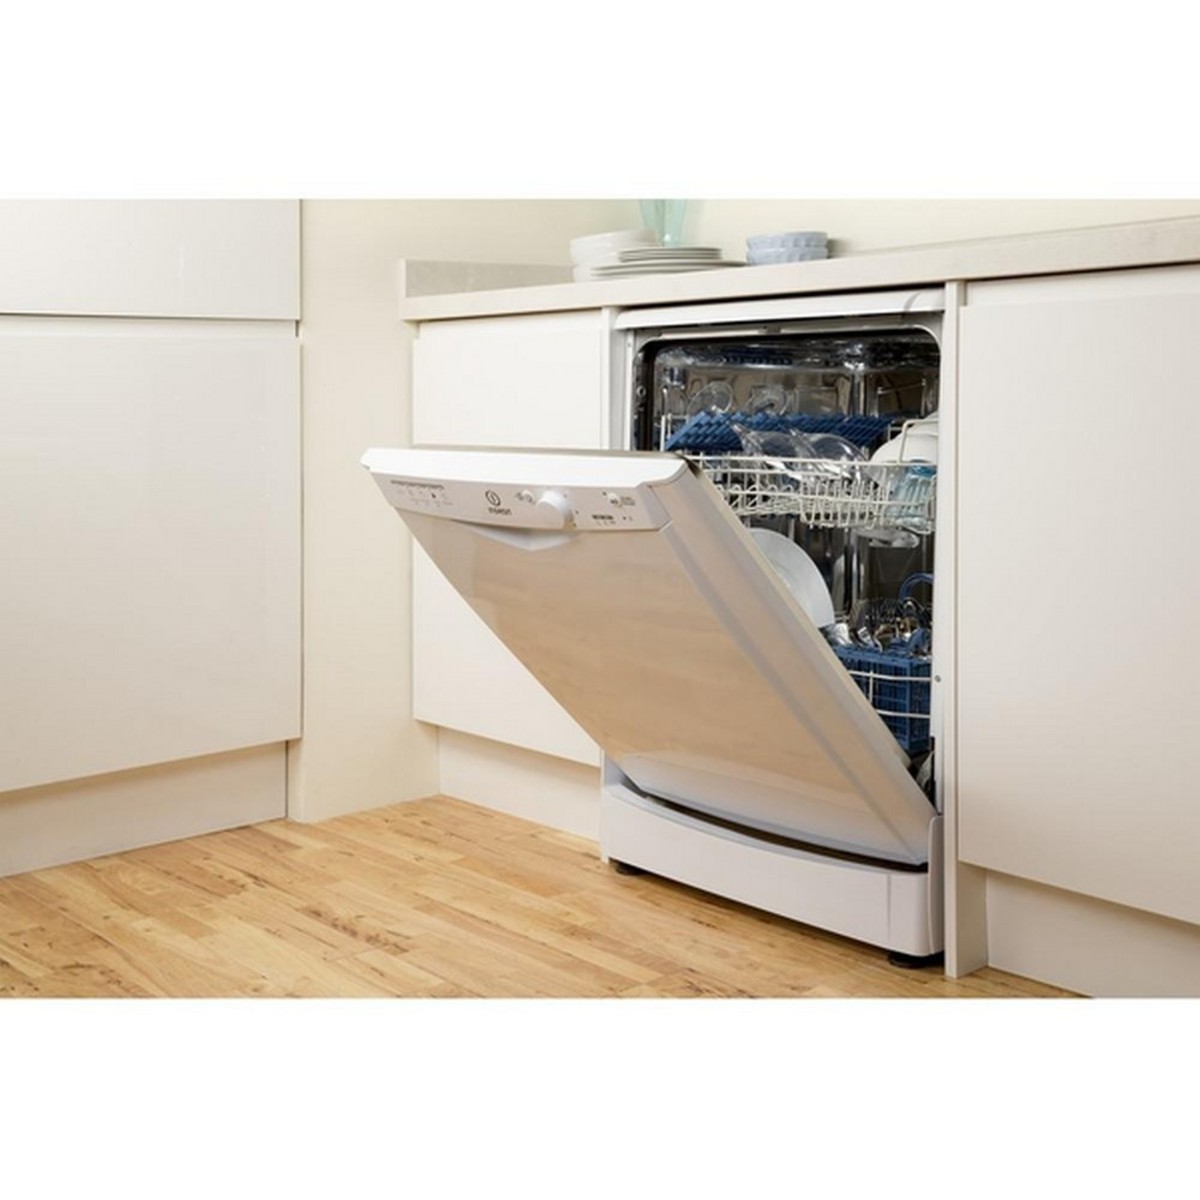 Indesit Dishwasher DFG15B1 5 Programs